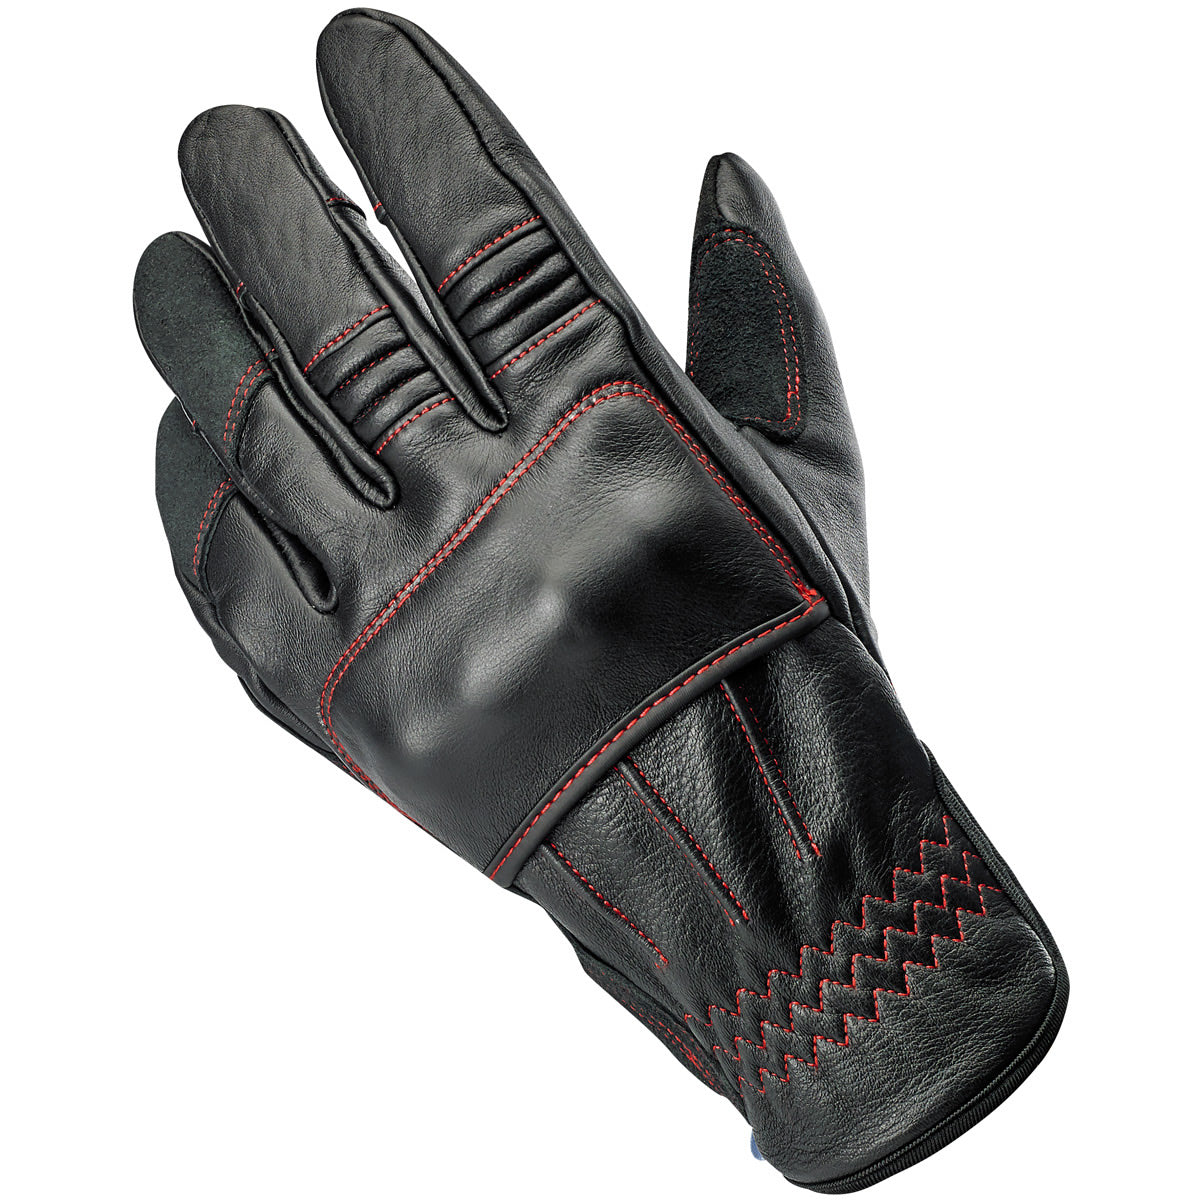 Belden Gloves - Redline